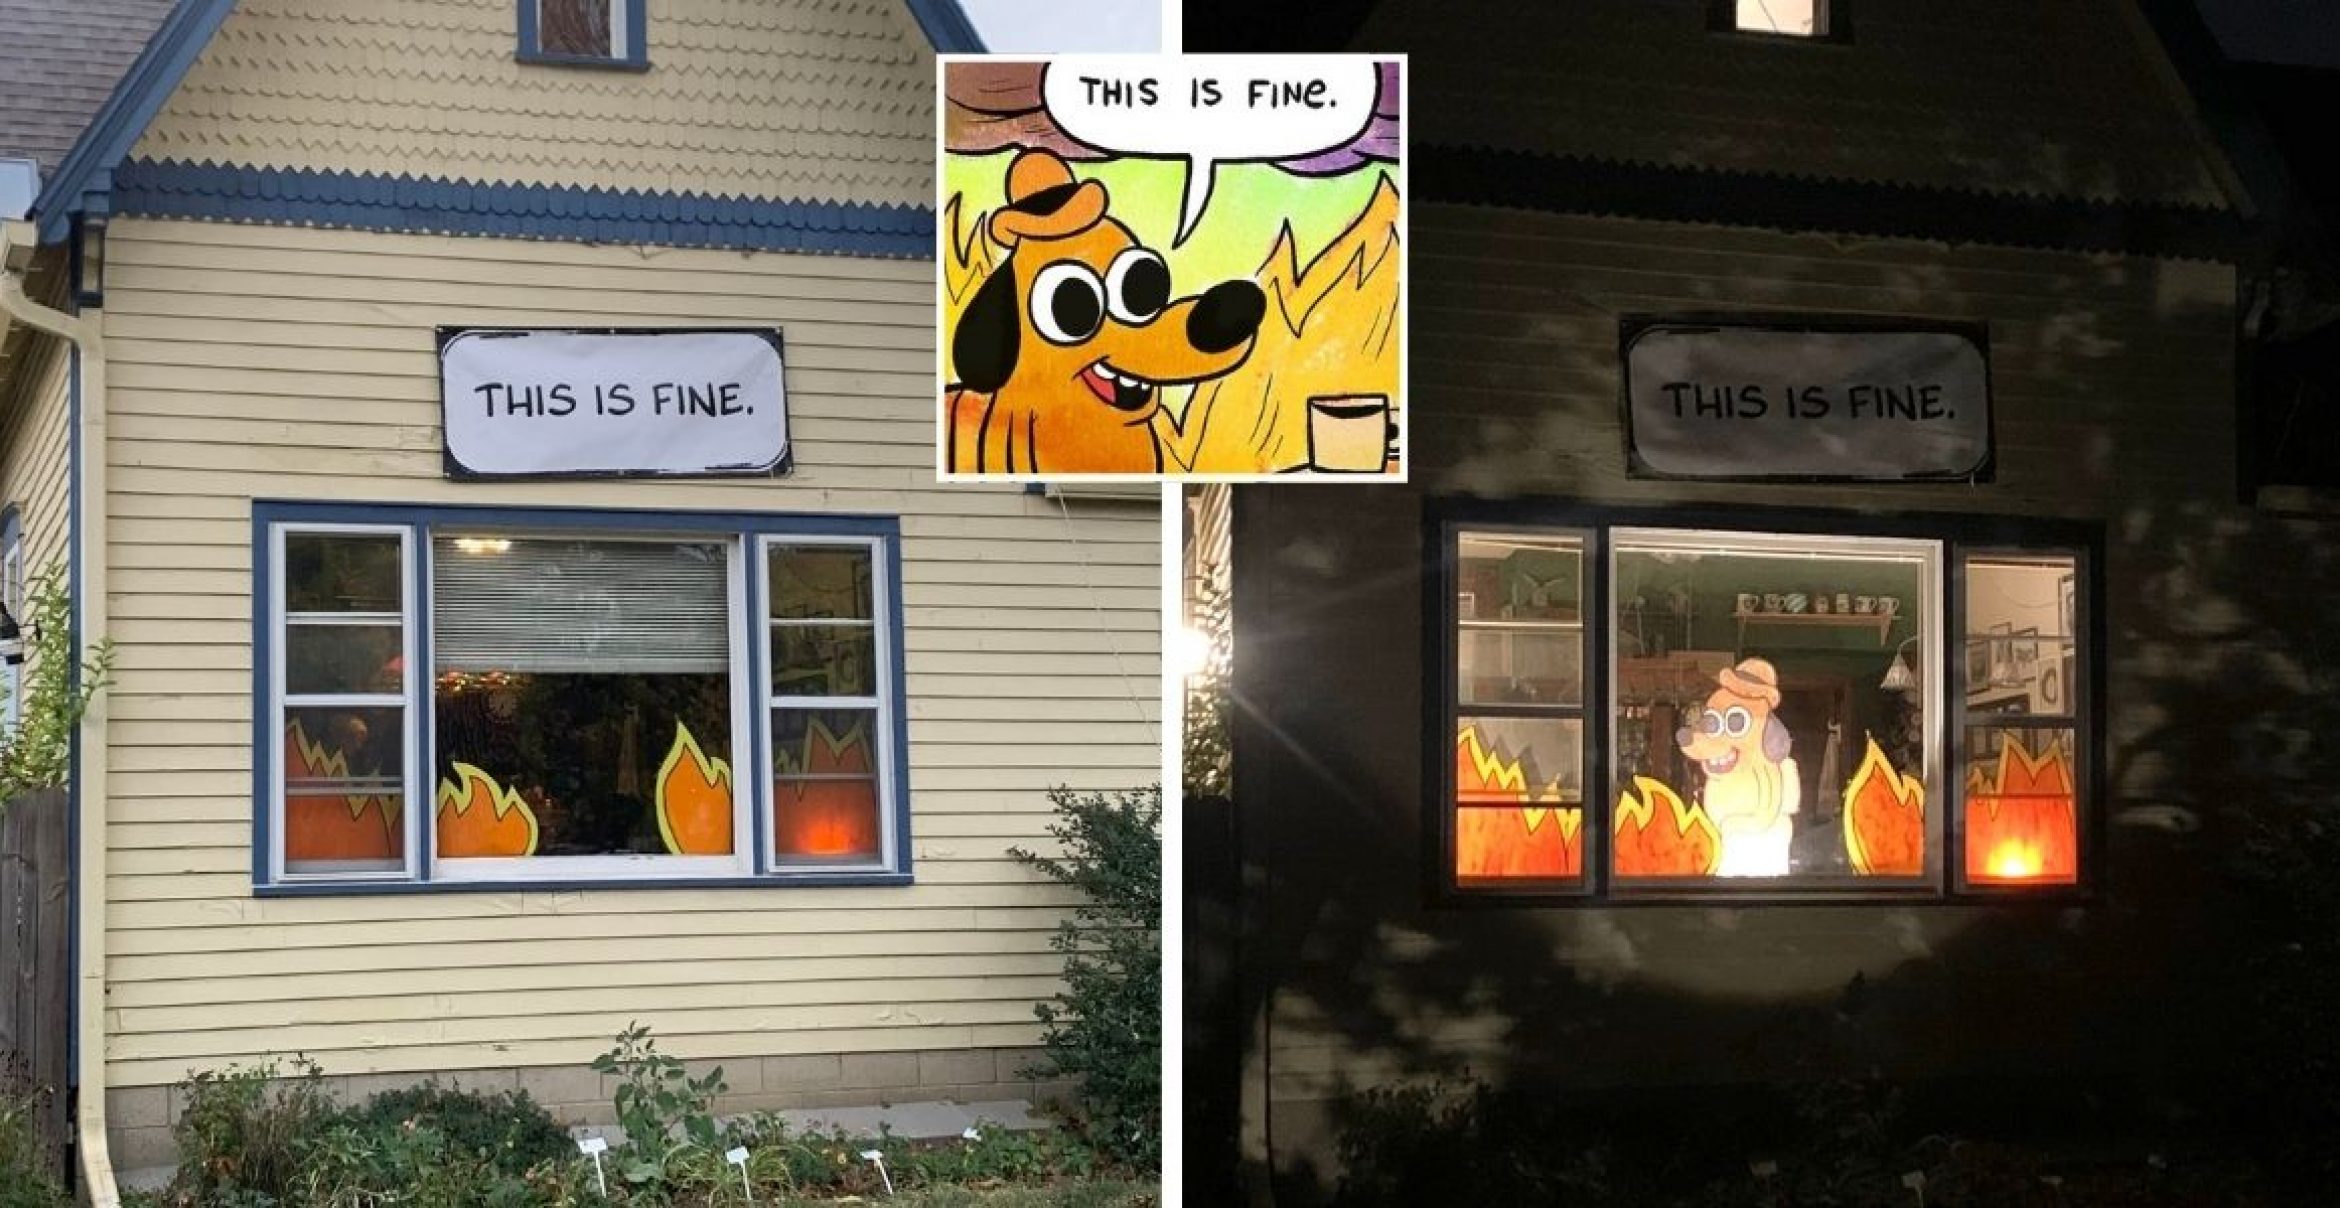 2020 in einem Bild: Halloween-Fan dekoriert Haus zu „This is fine“-Meme um